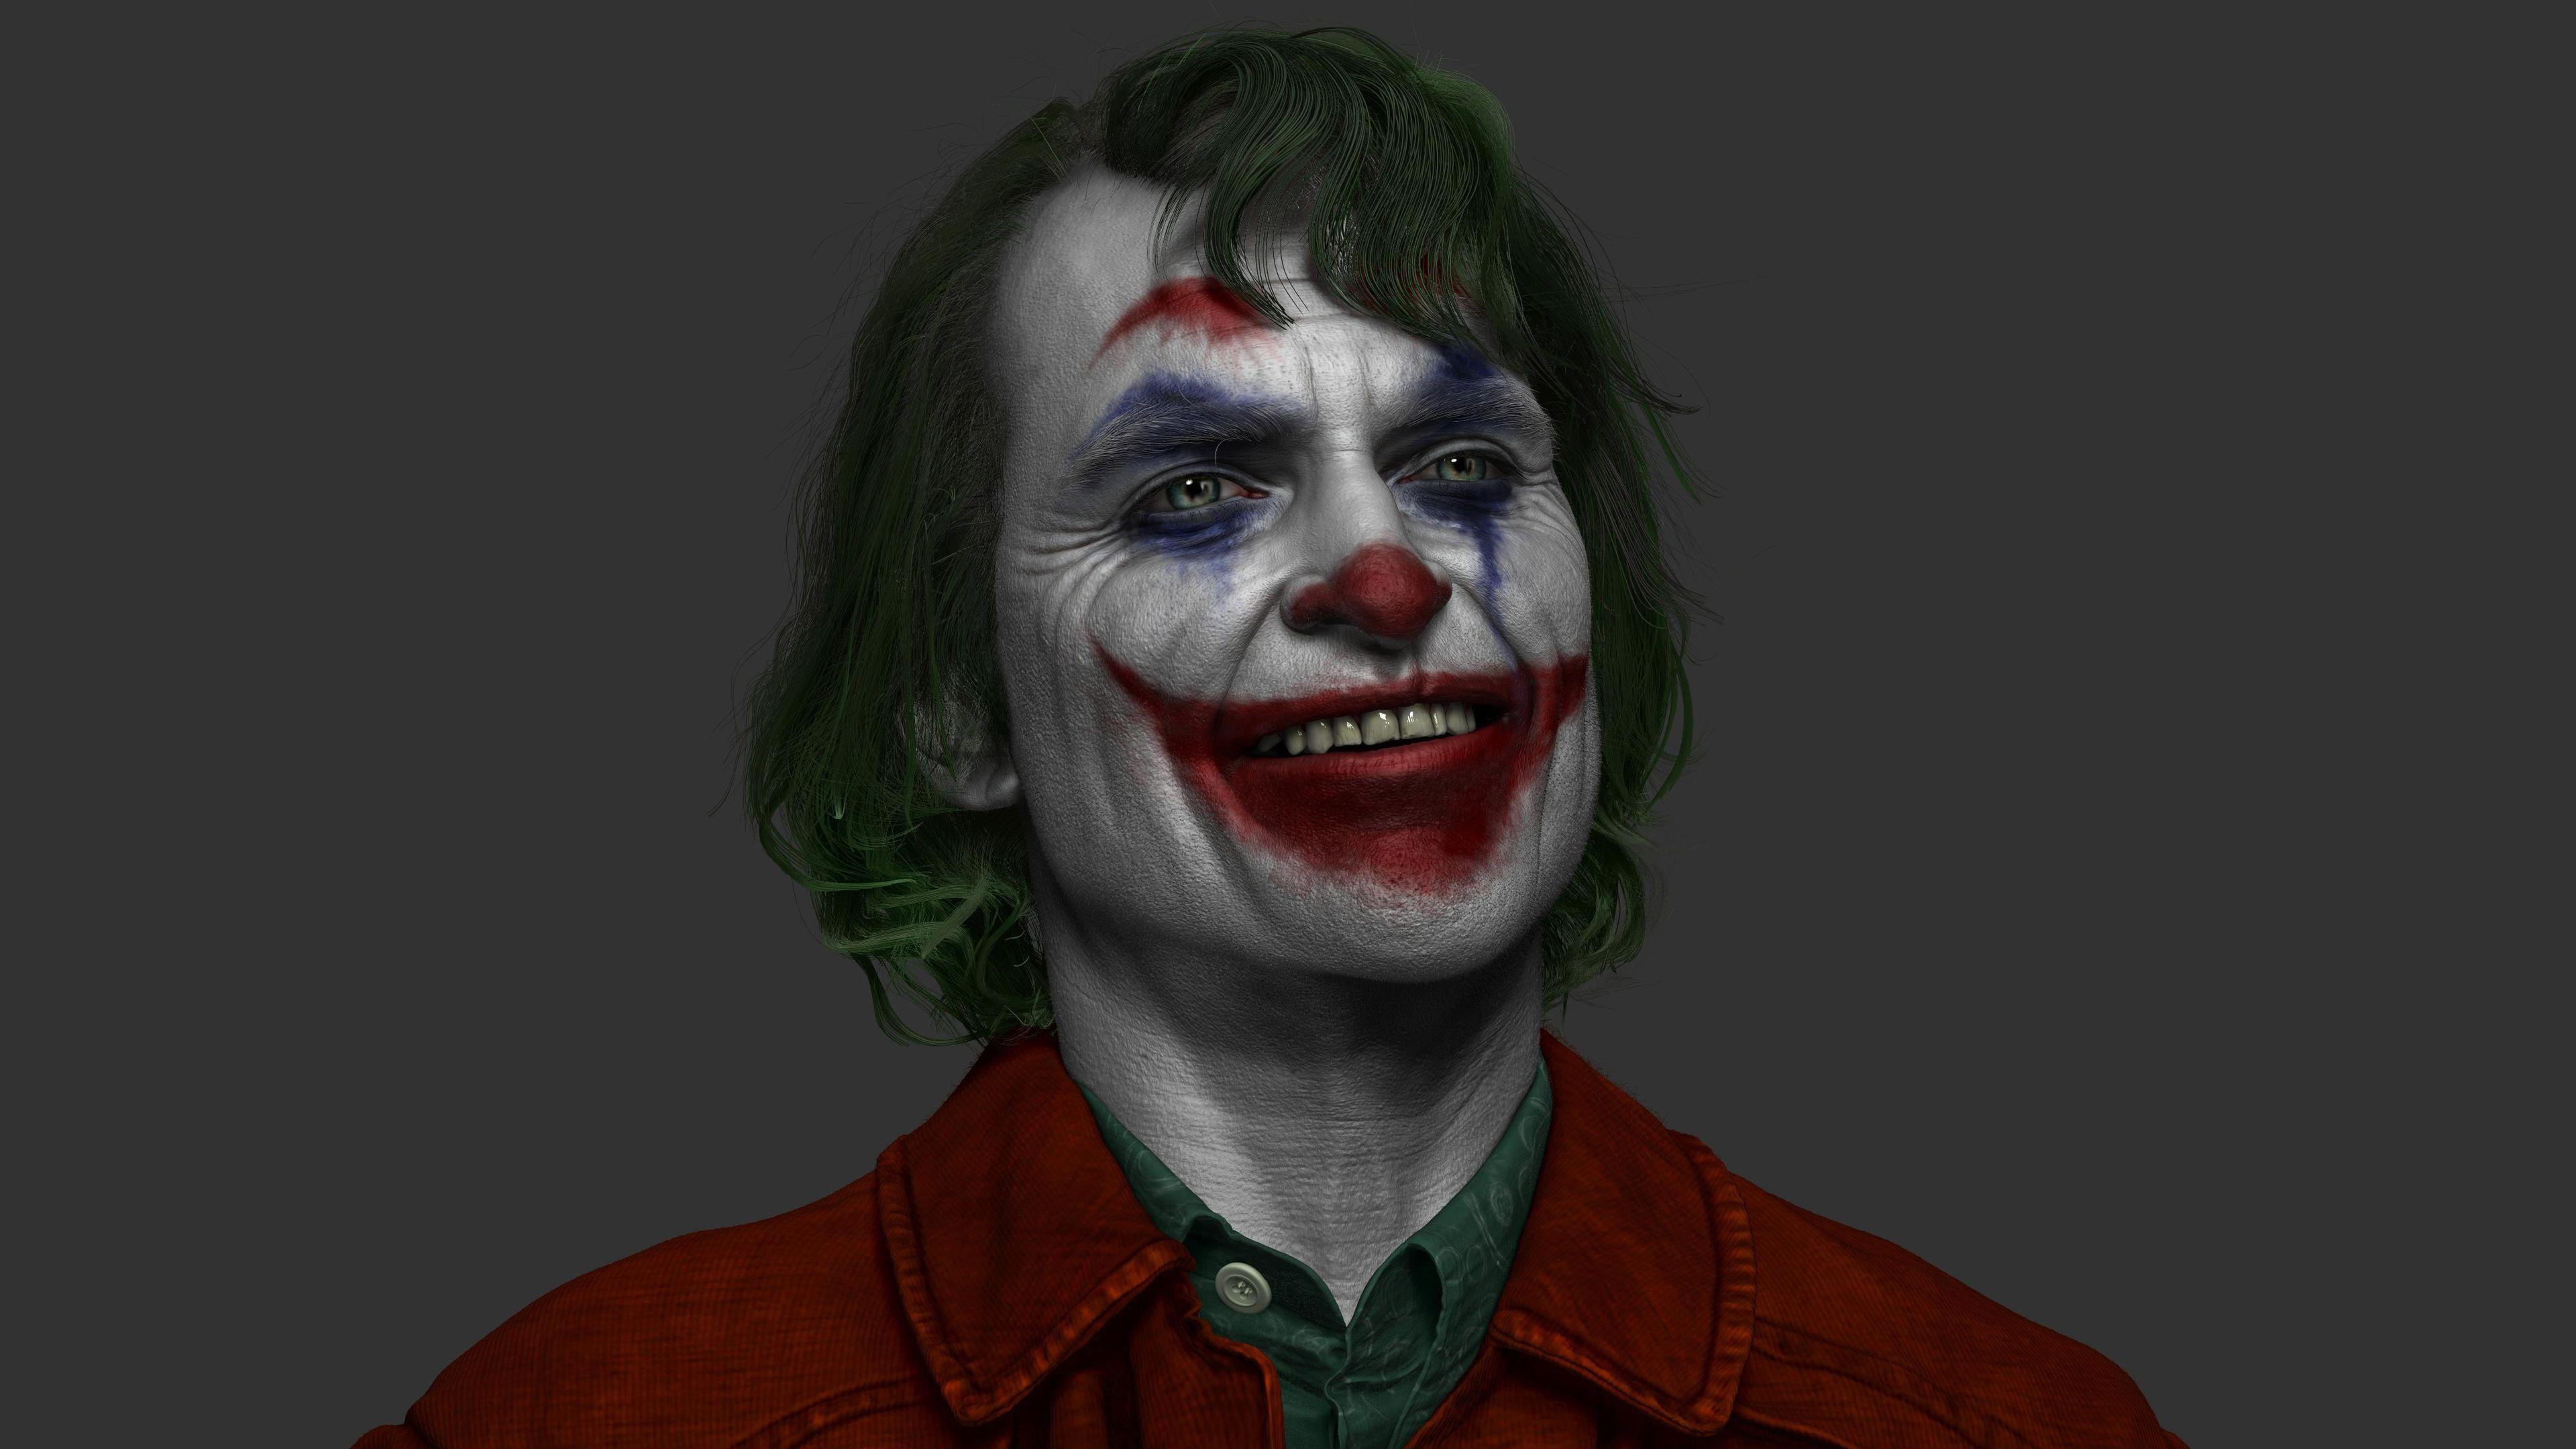 3840x2160 Hình nền 4k Joker Joaquin Phoenix Hình nền 4k Hình nền 4k, Hình nền tác phẩm nghệ thuật, Hình nền đen và trắng, Hình nền nghệ thuật số, Hình nền hd, Hình nền Joaquin Phoenix, Hình nền Joker, Hình nền đơn sắc, Hình nền siêu anh hùng